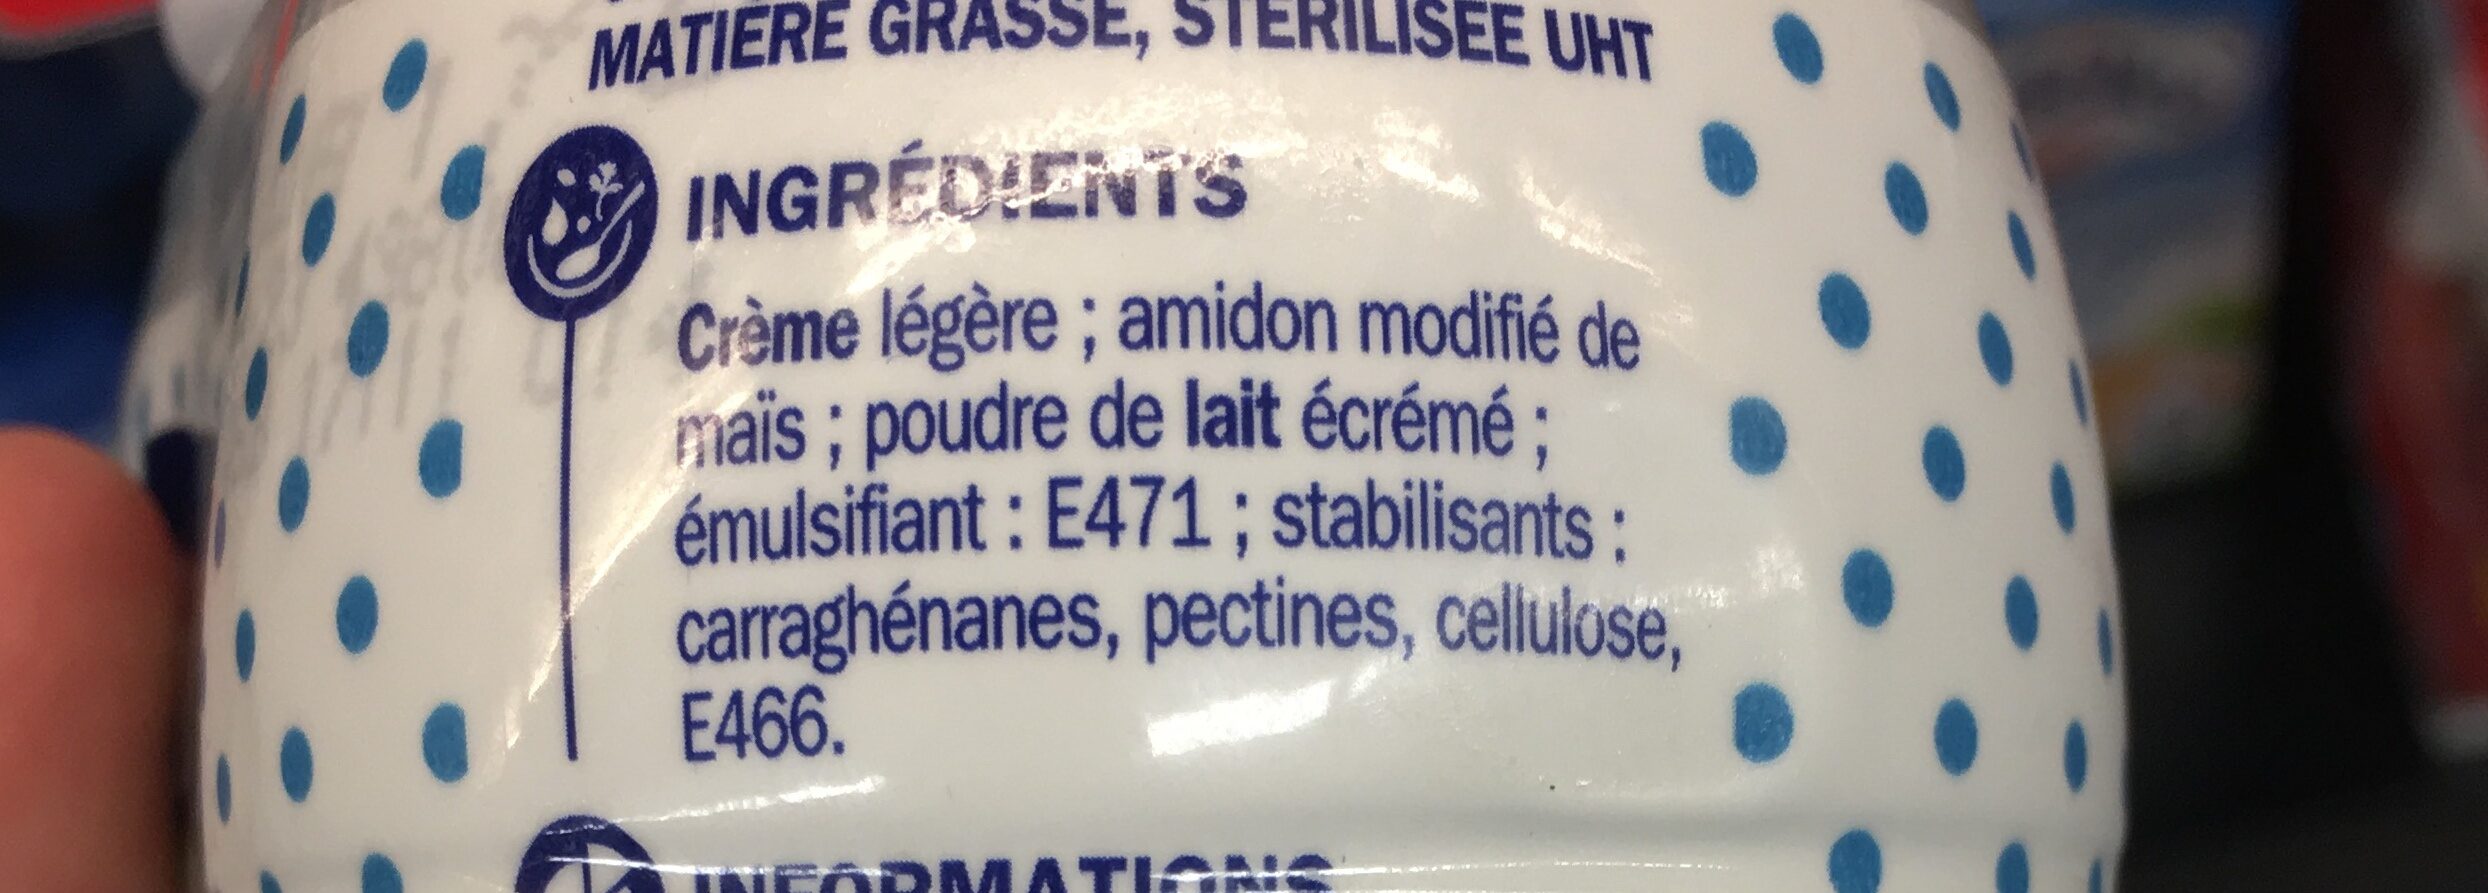 Crème liquide - Ingredients - fr